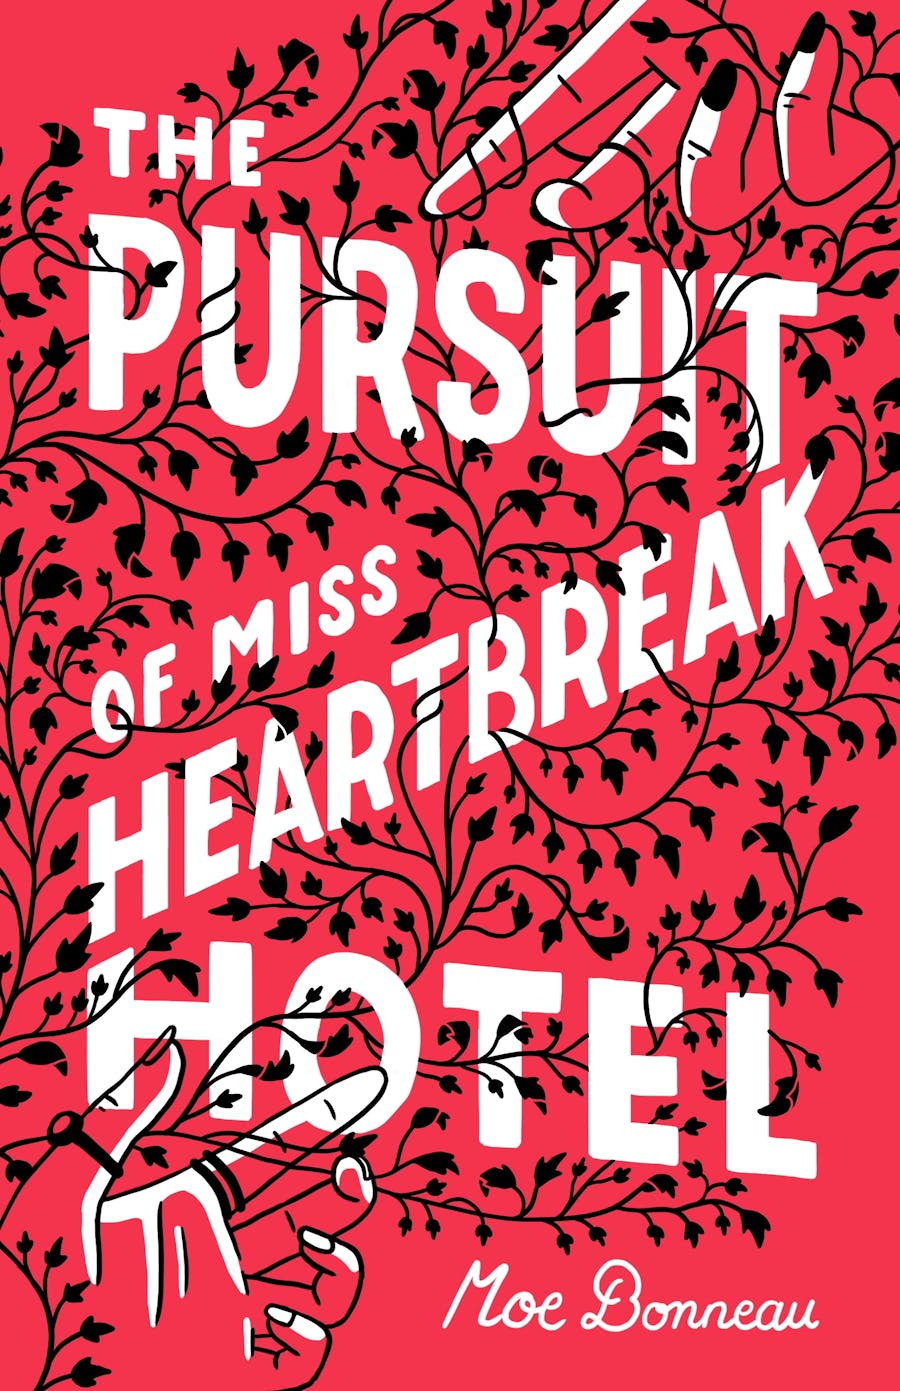 pursuit-heartbreak-11-12